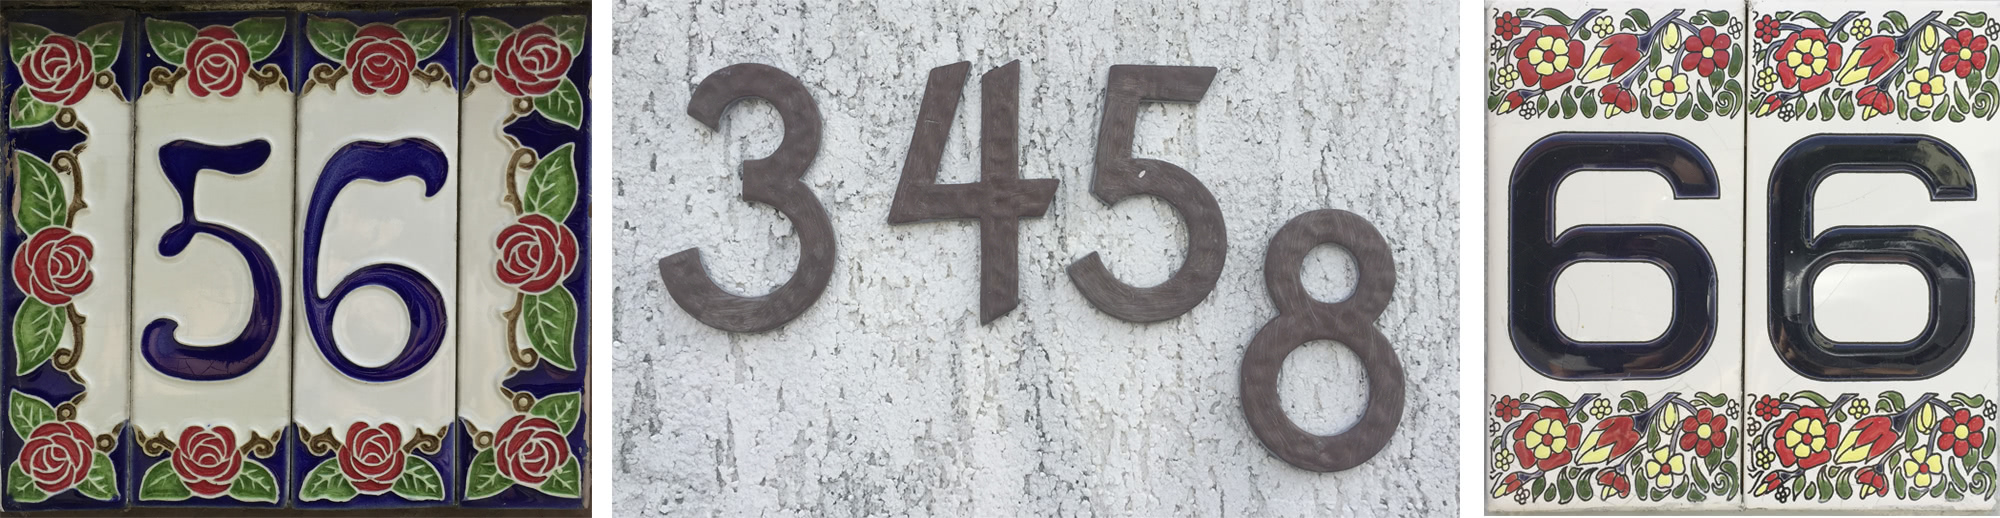 viele interessante Hausnummern habe ich in der Gegend entdeckt, drei davon: 56, 3456, 66